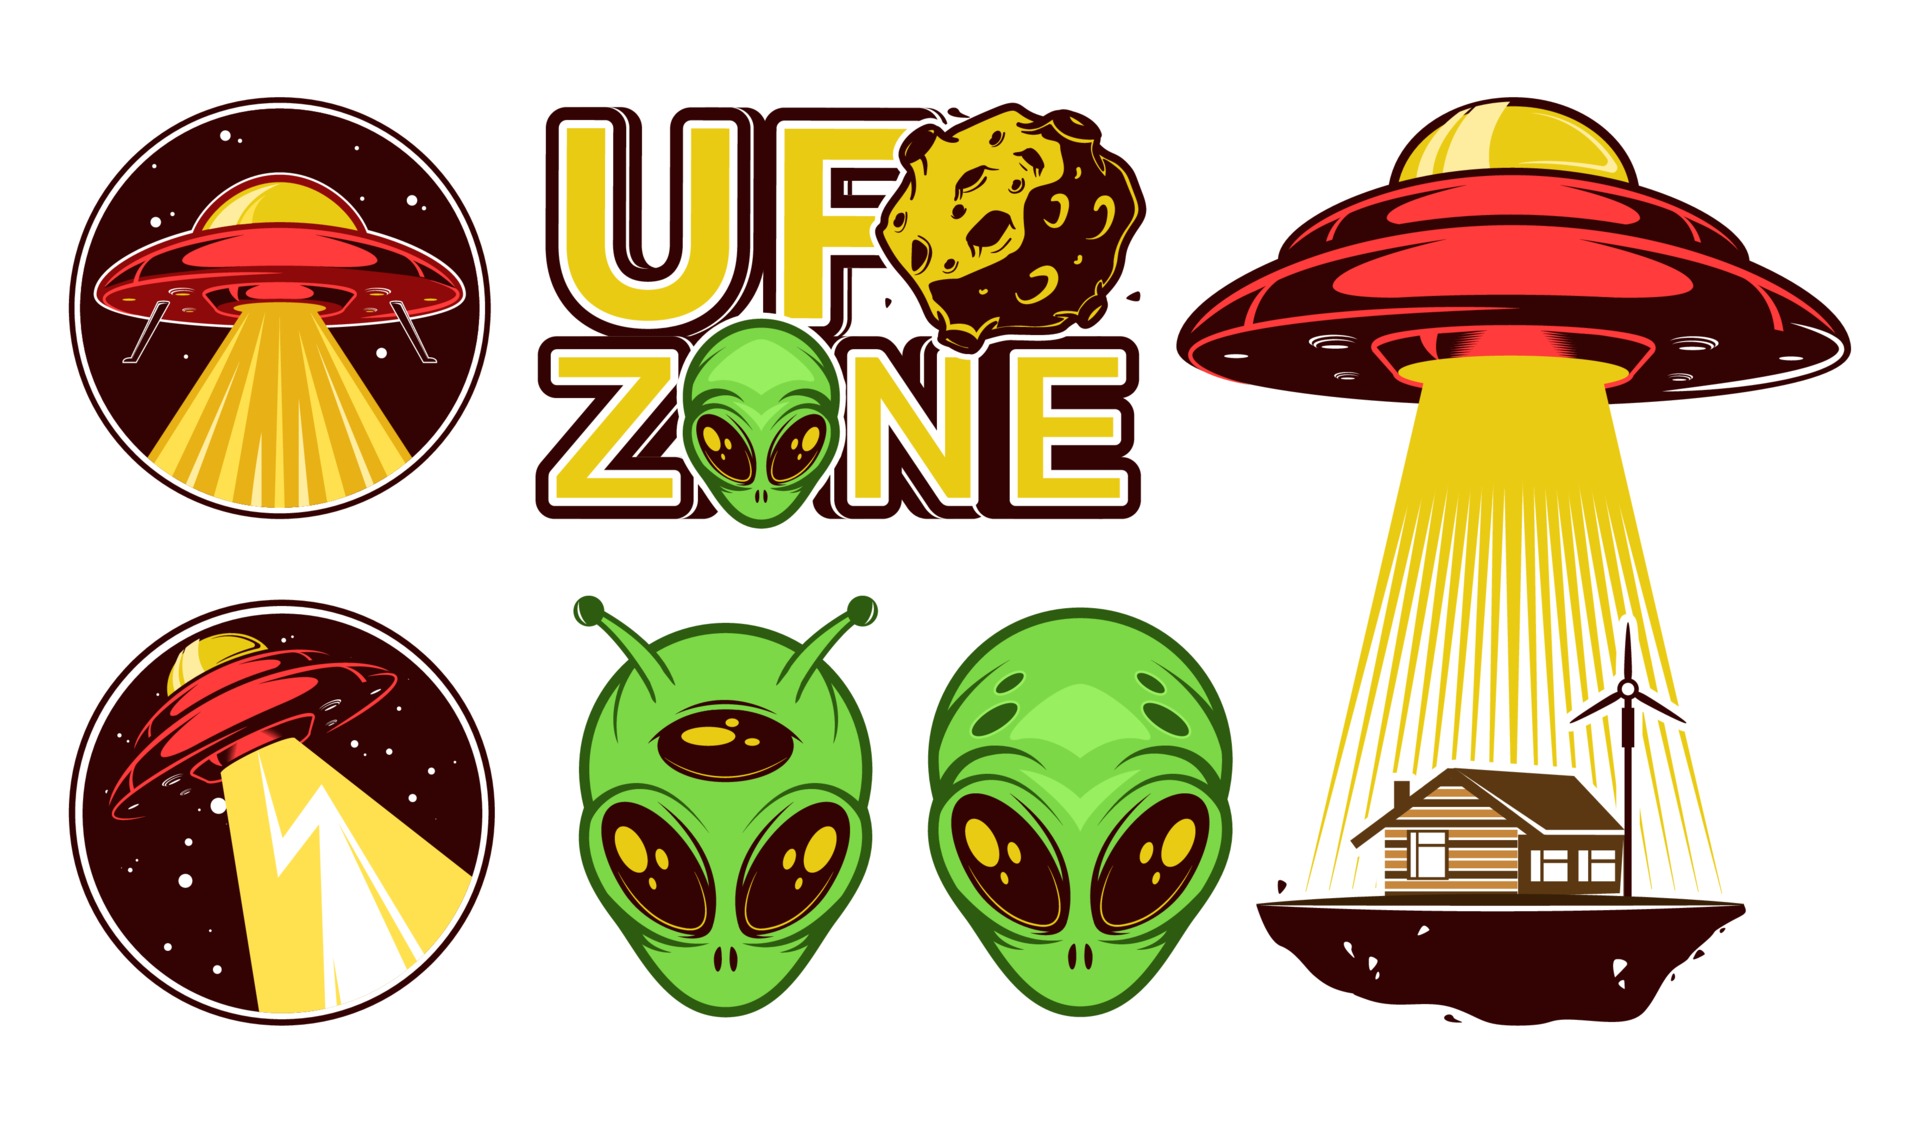 conjunto de logotipo de grandes alienígenas. dia ufo. emblemas